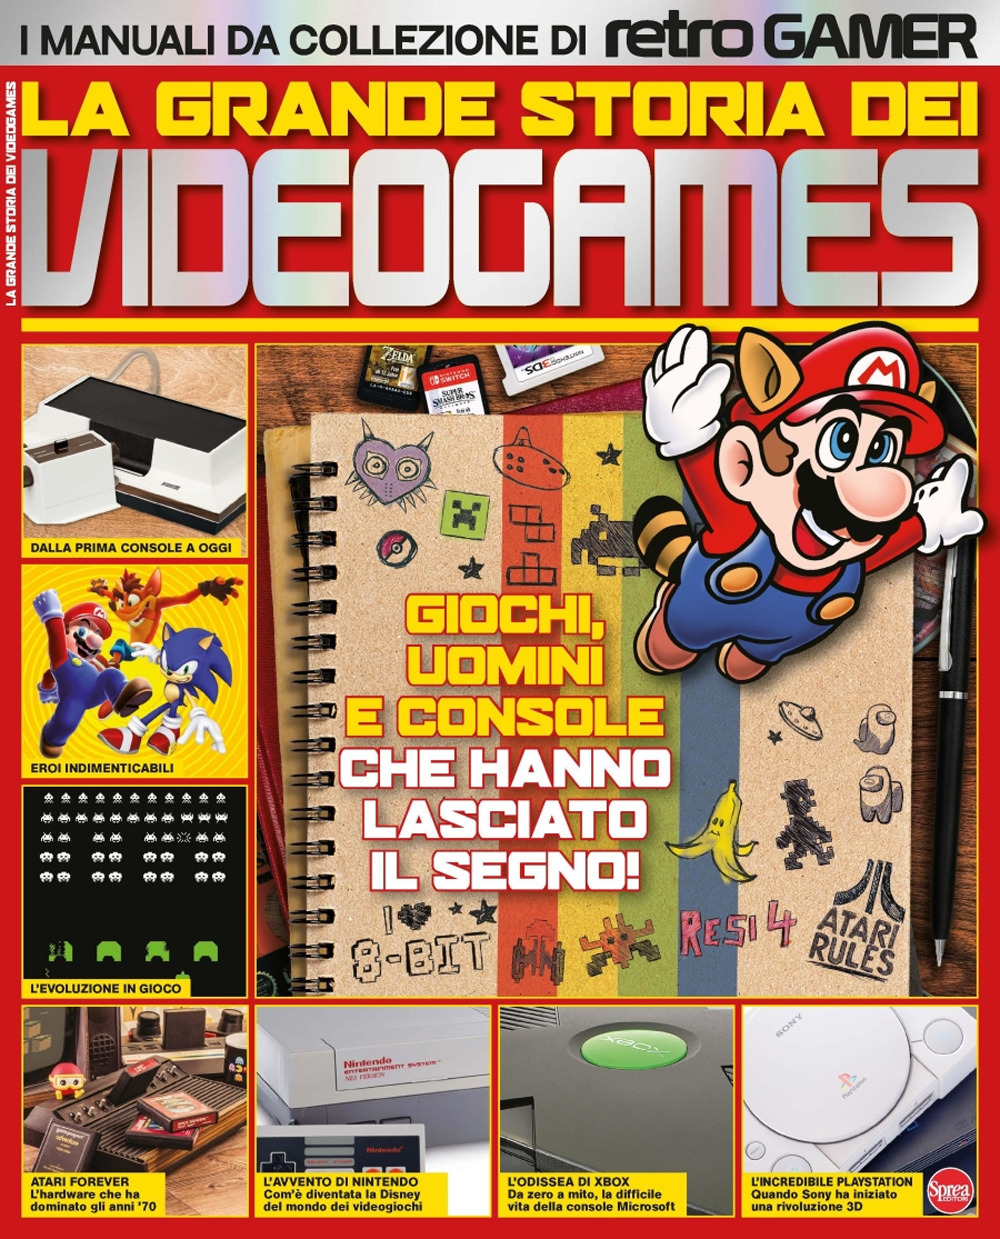 La grande storia dei videogames. I manuali da collezione di Retro Gamer